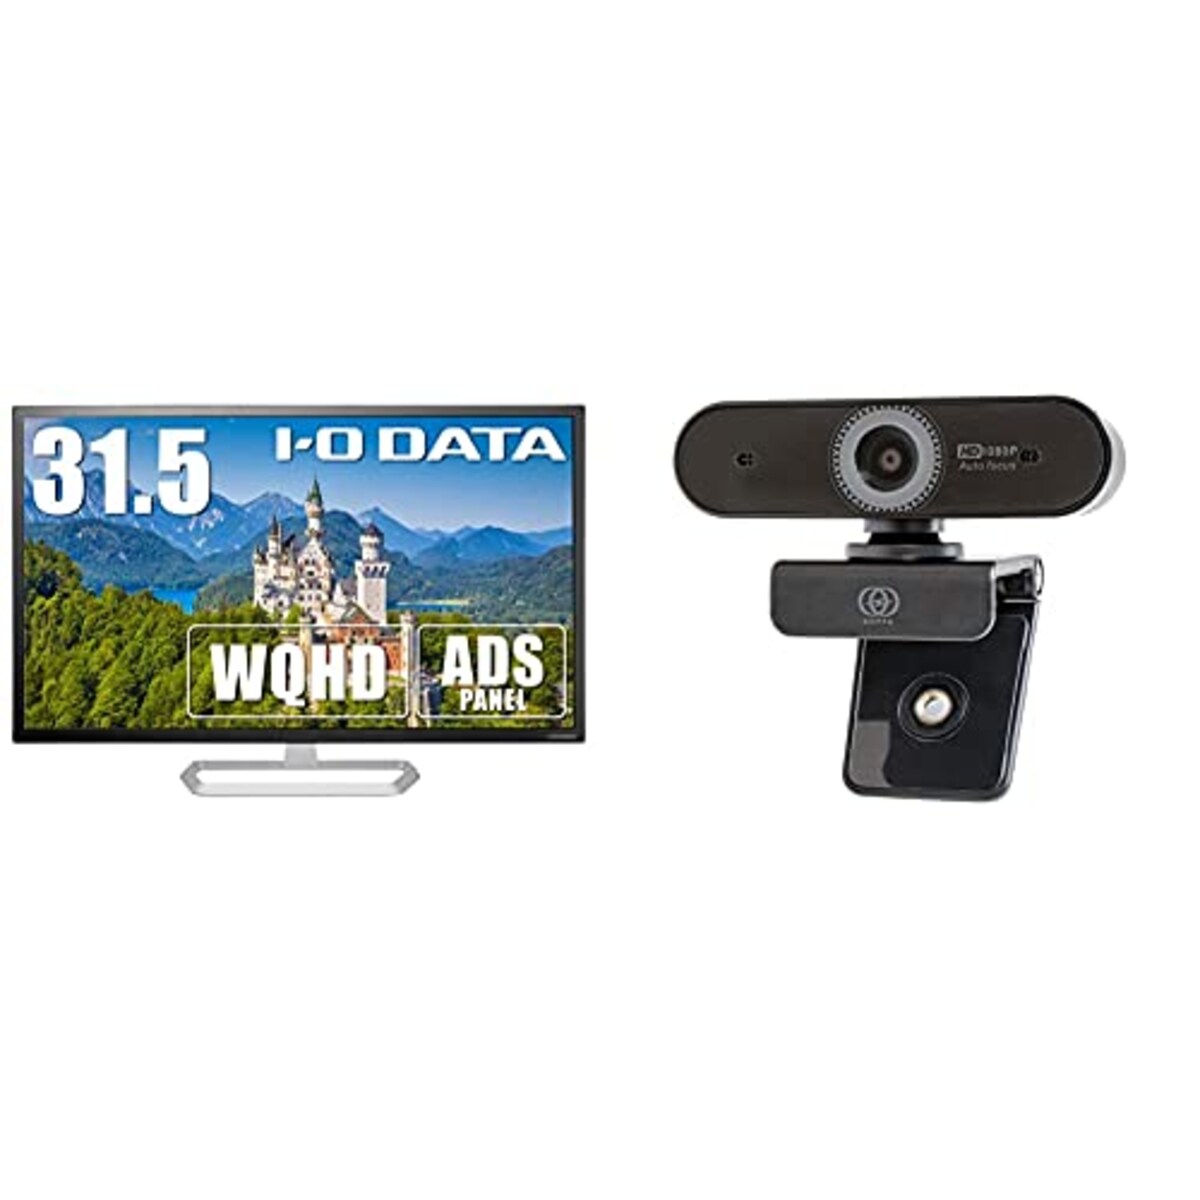 【セット買い】I-O DATA モニター 31.5型 WQHD HDMI×3 DP×1 スピーカー付 ADSパネル 土日サポート EX-LDQ322DB & GOPPA ウェブカメラ オートフォーカス機能搭載 フルHD 200万画素 1920×1080対応 マイク内蔵 GP-UCAM2FA/E